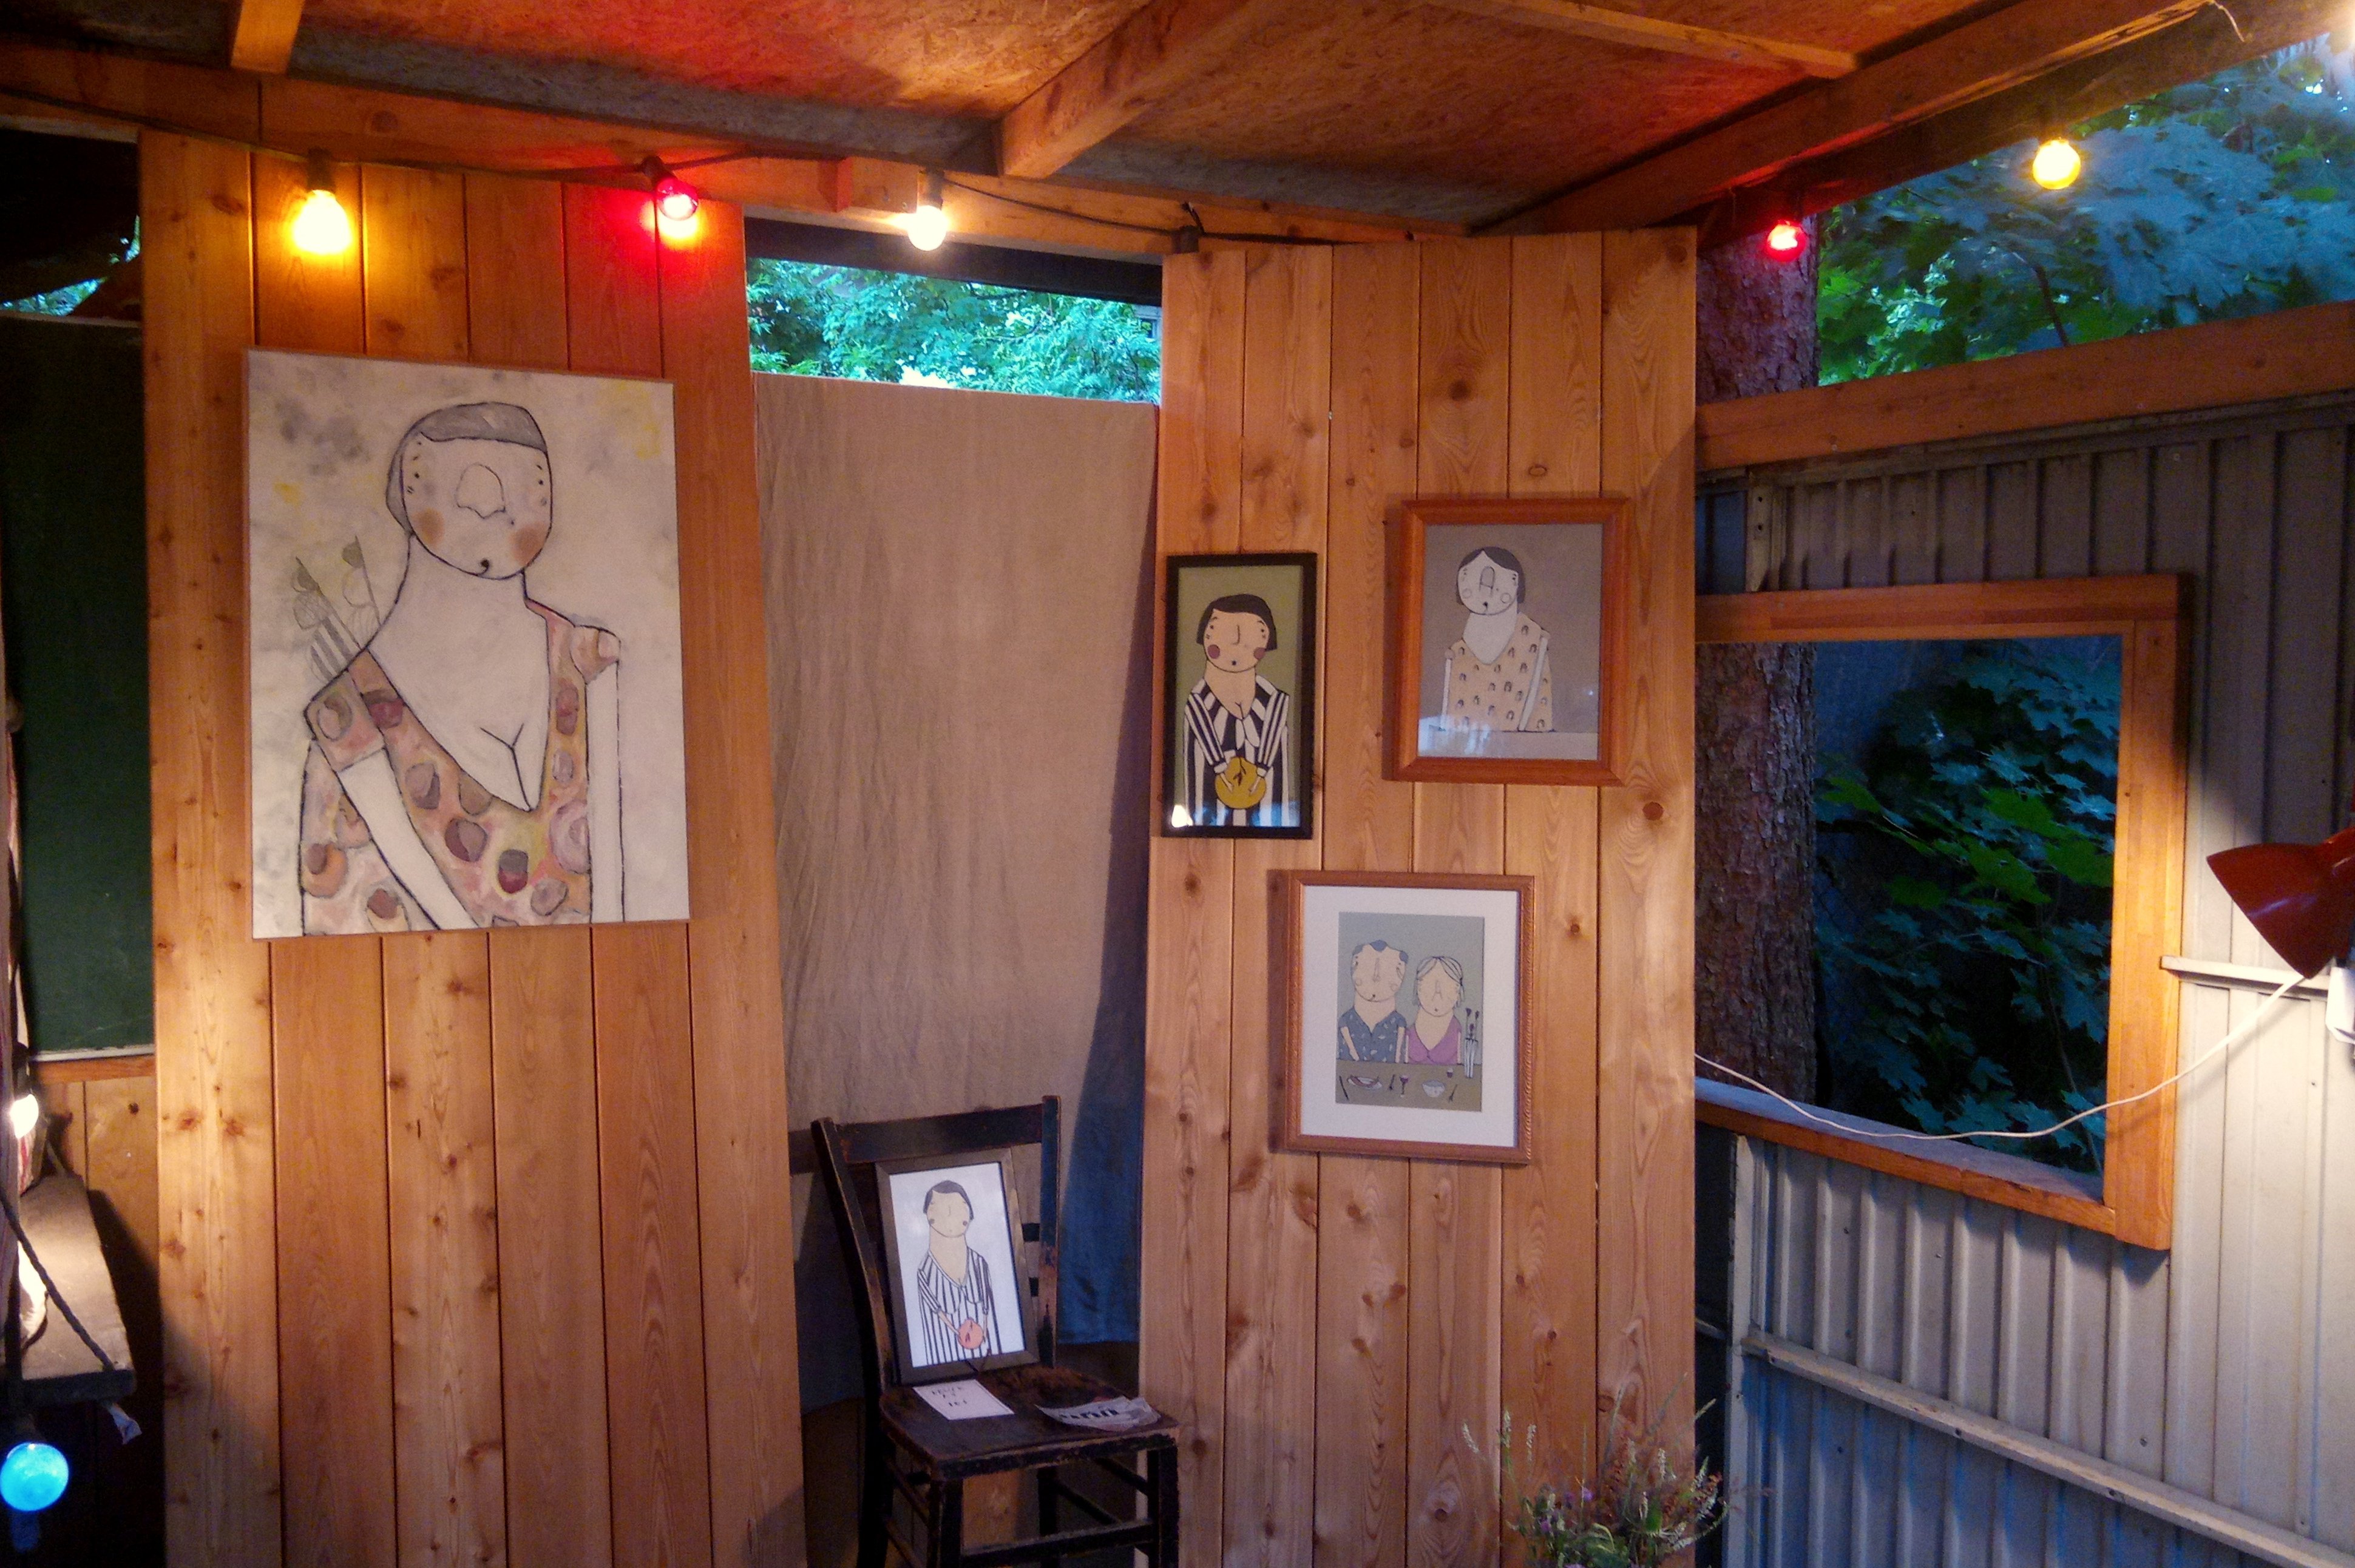 Im Innenraum des kleinen Holzhauses hängen gezeichnete Portraits von V.D. Blokk. Sie sind skizzenhaft coloriert. Sie hängen in unterschiedlicher Anordnung und Größe. Ein kleineres gerahmtes Bild steht in der Bildmitte auf einem Holzstuhl.